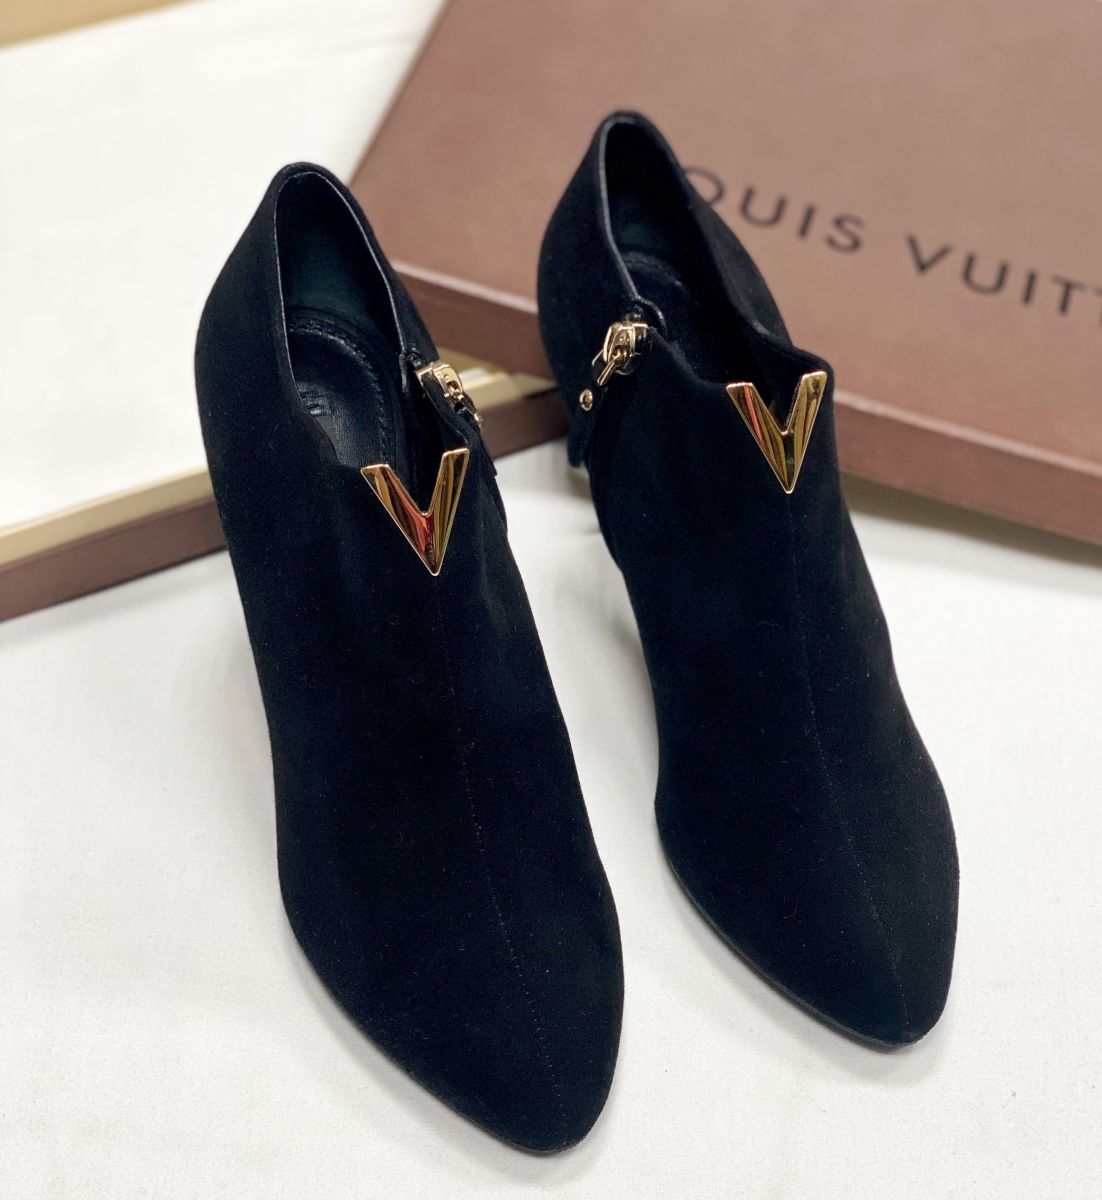 Ботильоны Louis Vuitton размер 37.5 цена 30 770 руб 